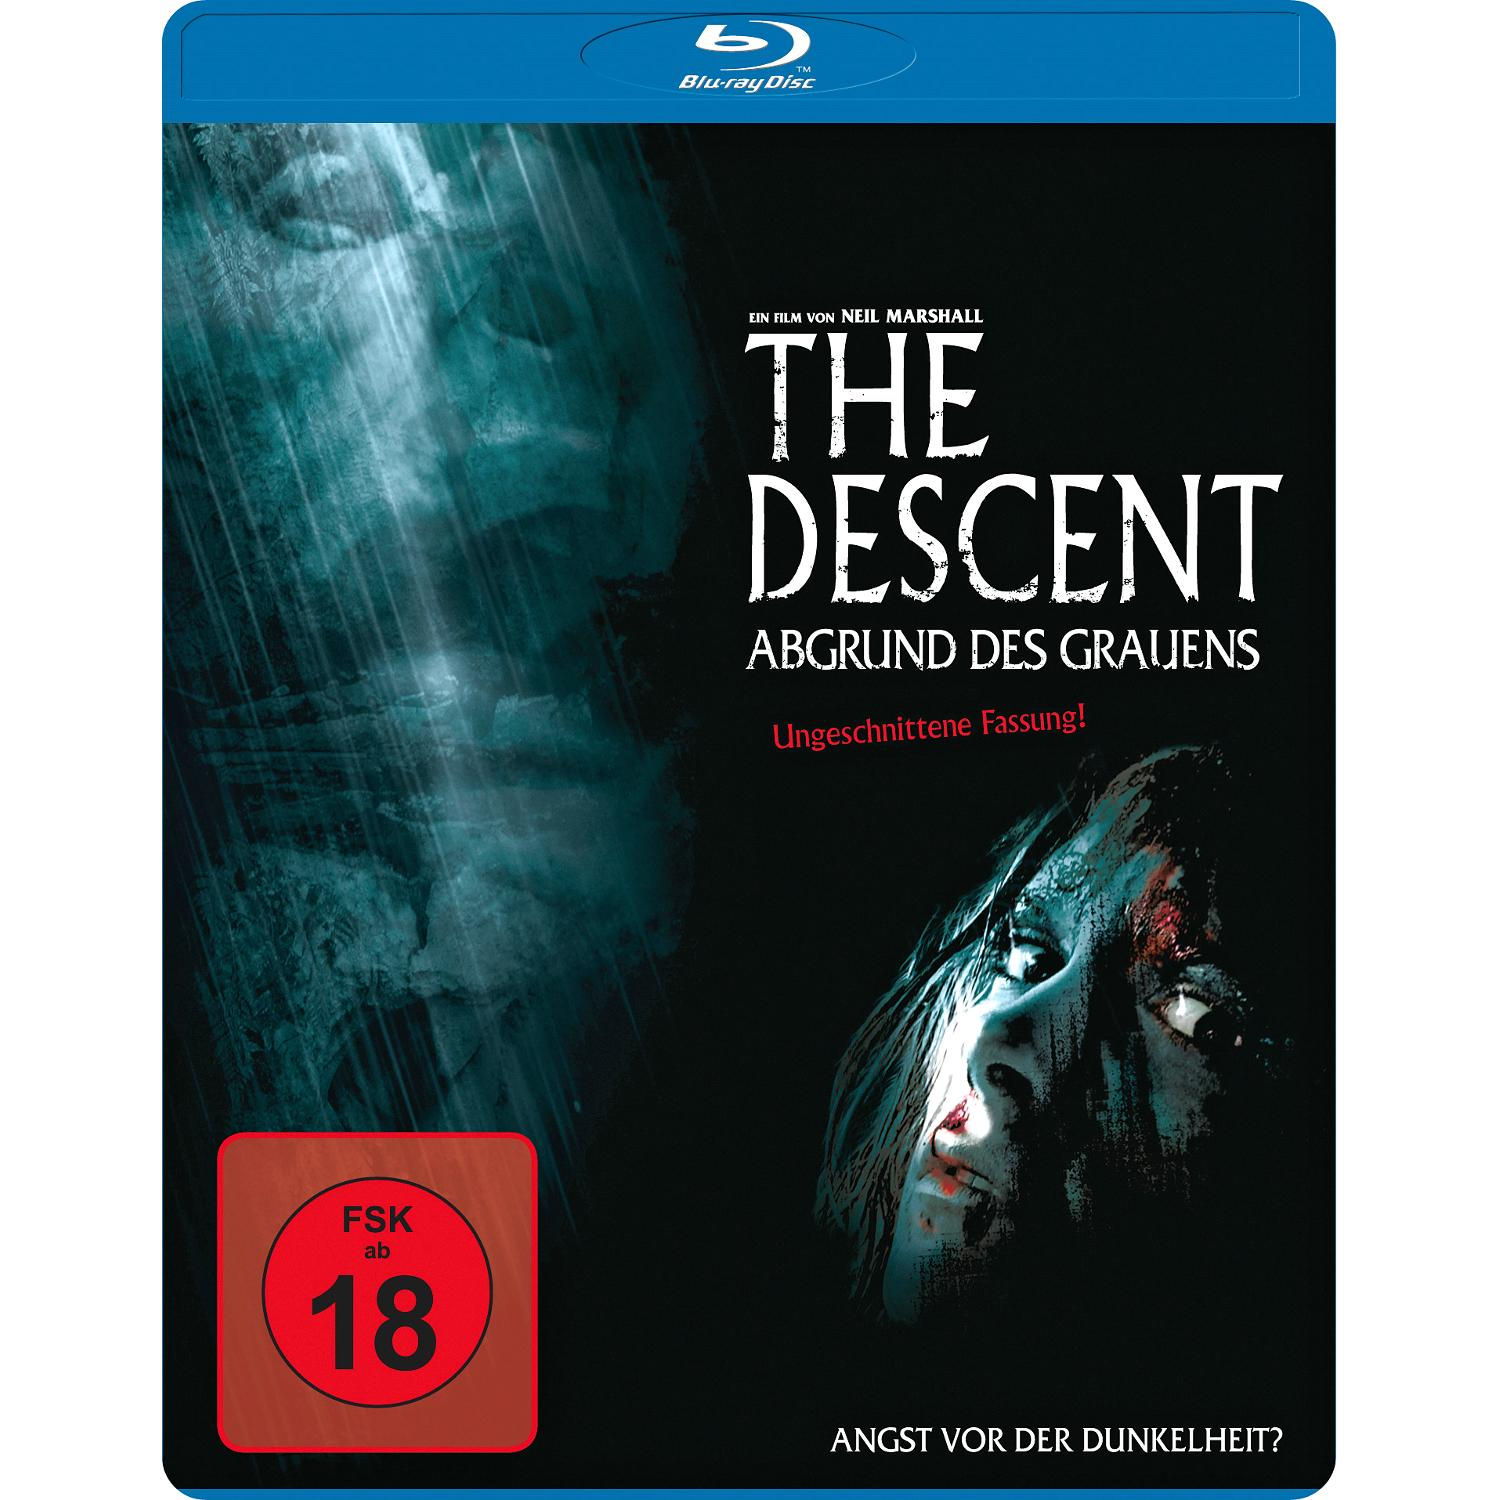 Descent des The Blu-ray - Grauens Abgrund